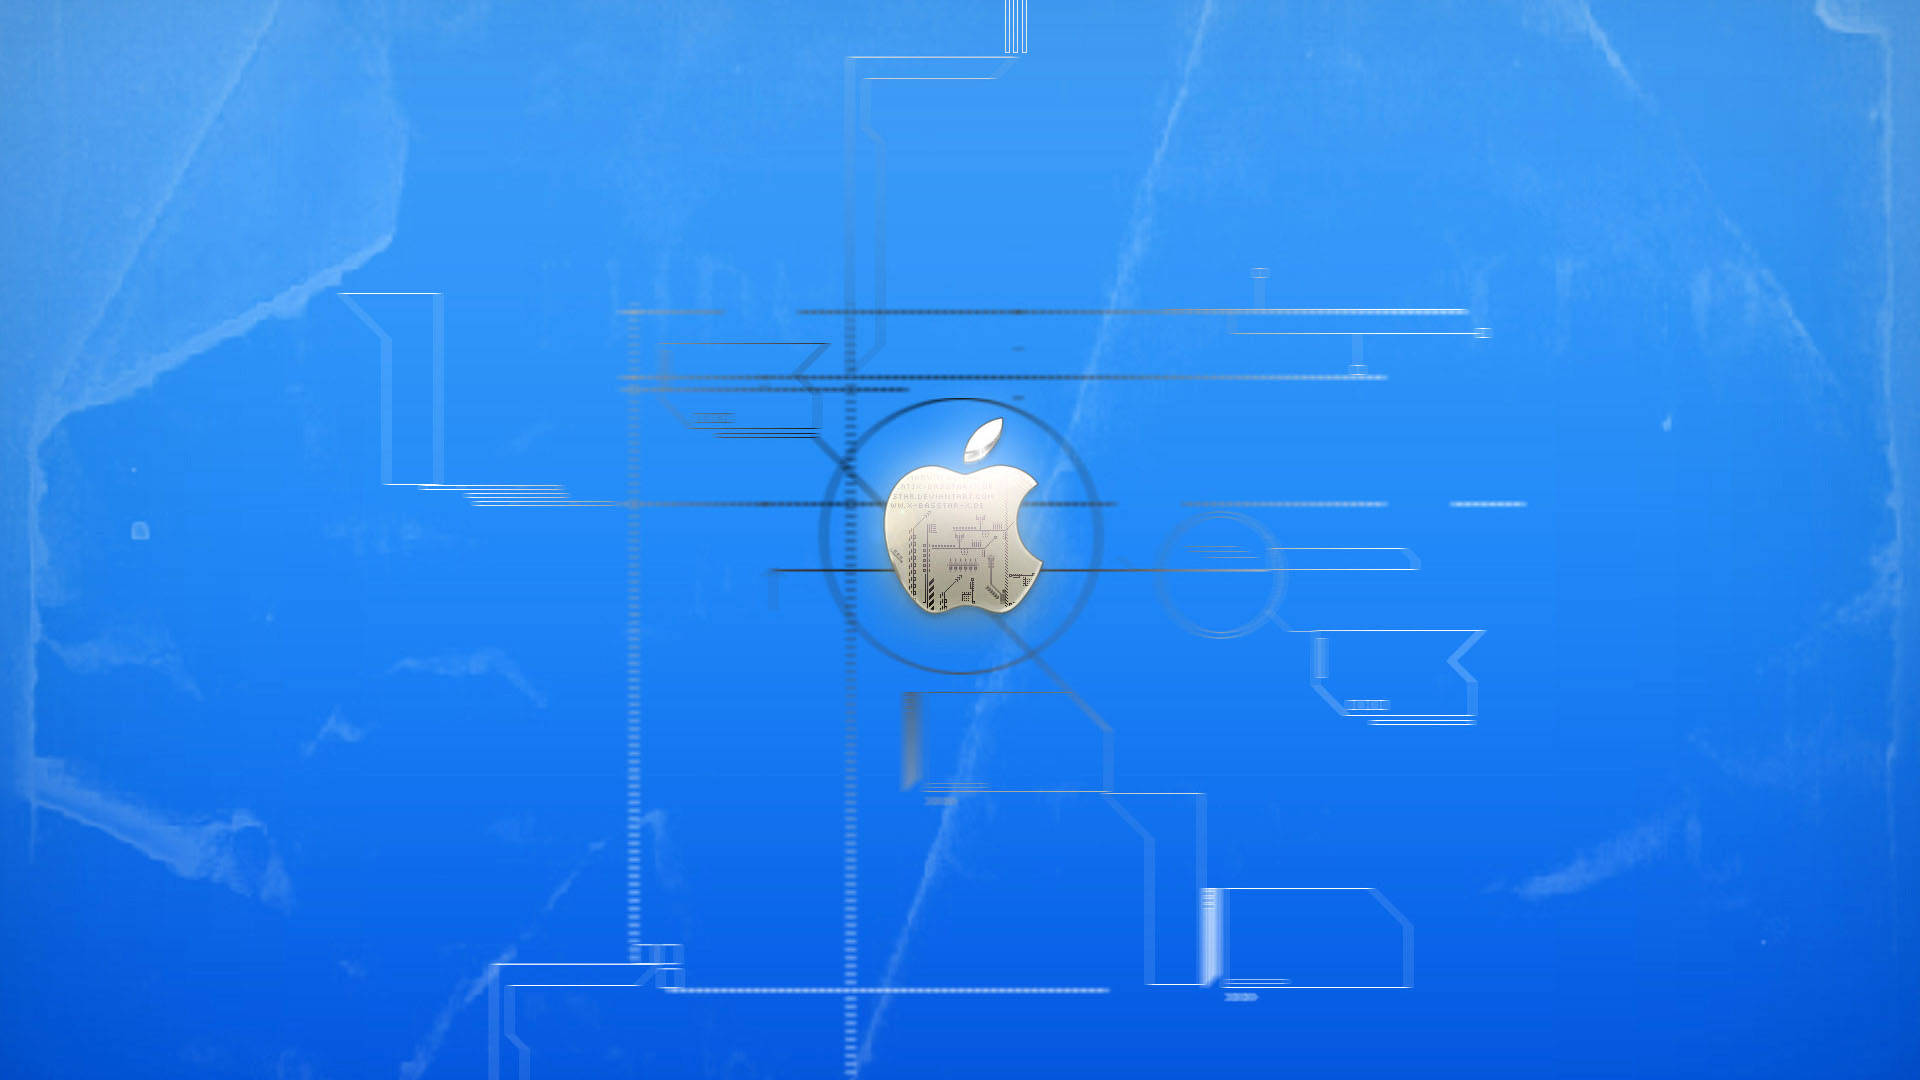 Apple HD Desktop Wallpaper